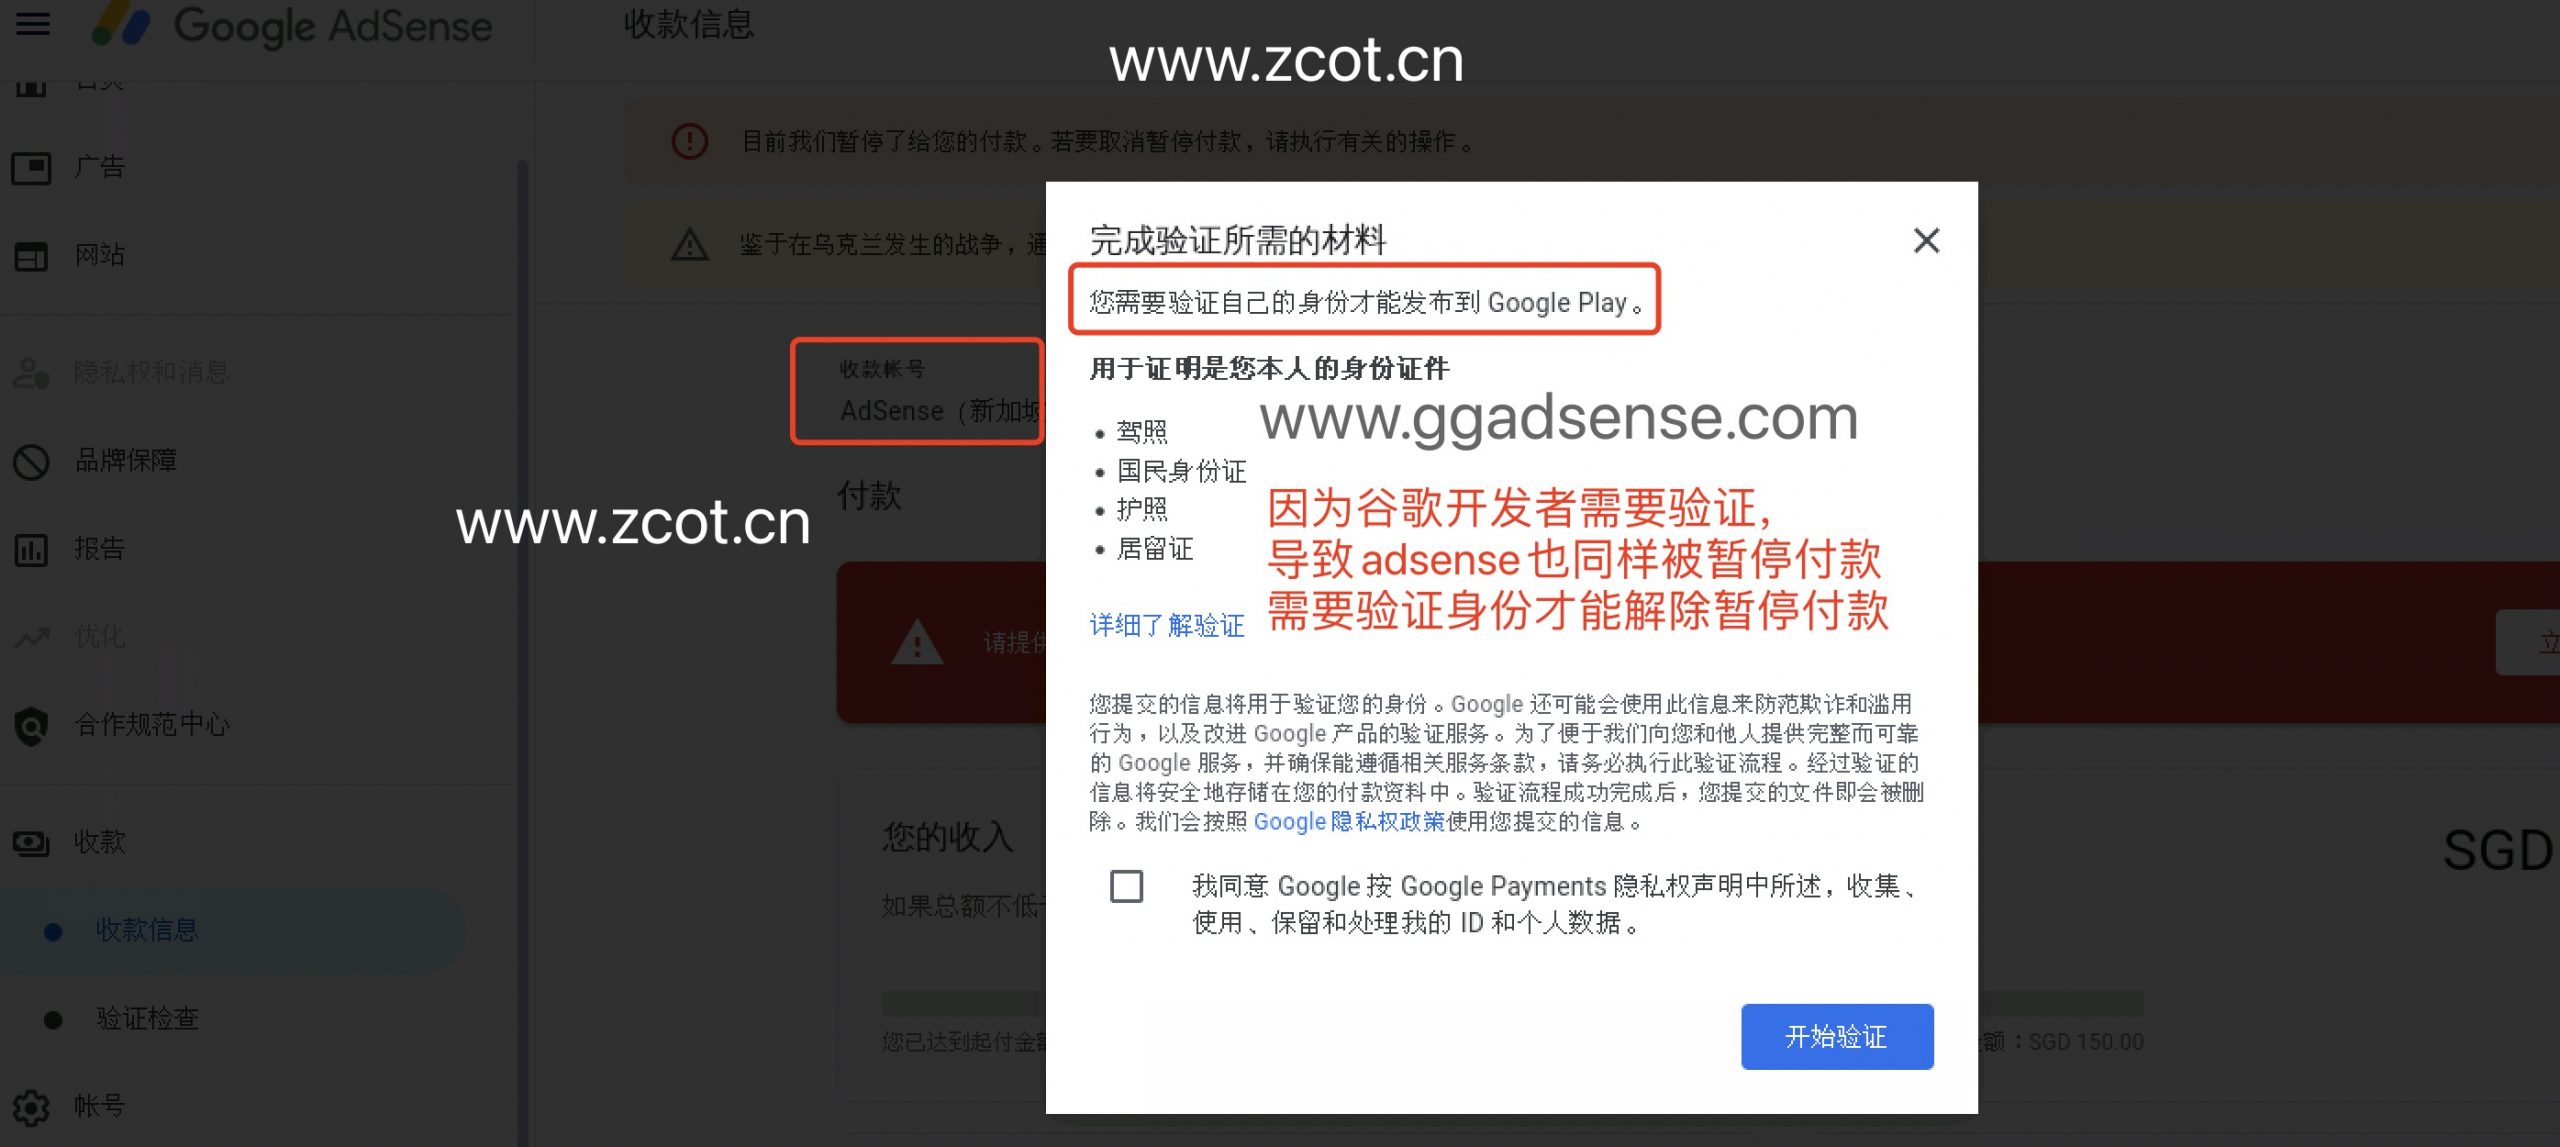 中国/香港AdSense/AdMob账号不需要进行身份验证,为什么也被暂停付款需要验证身份信息？